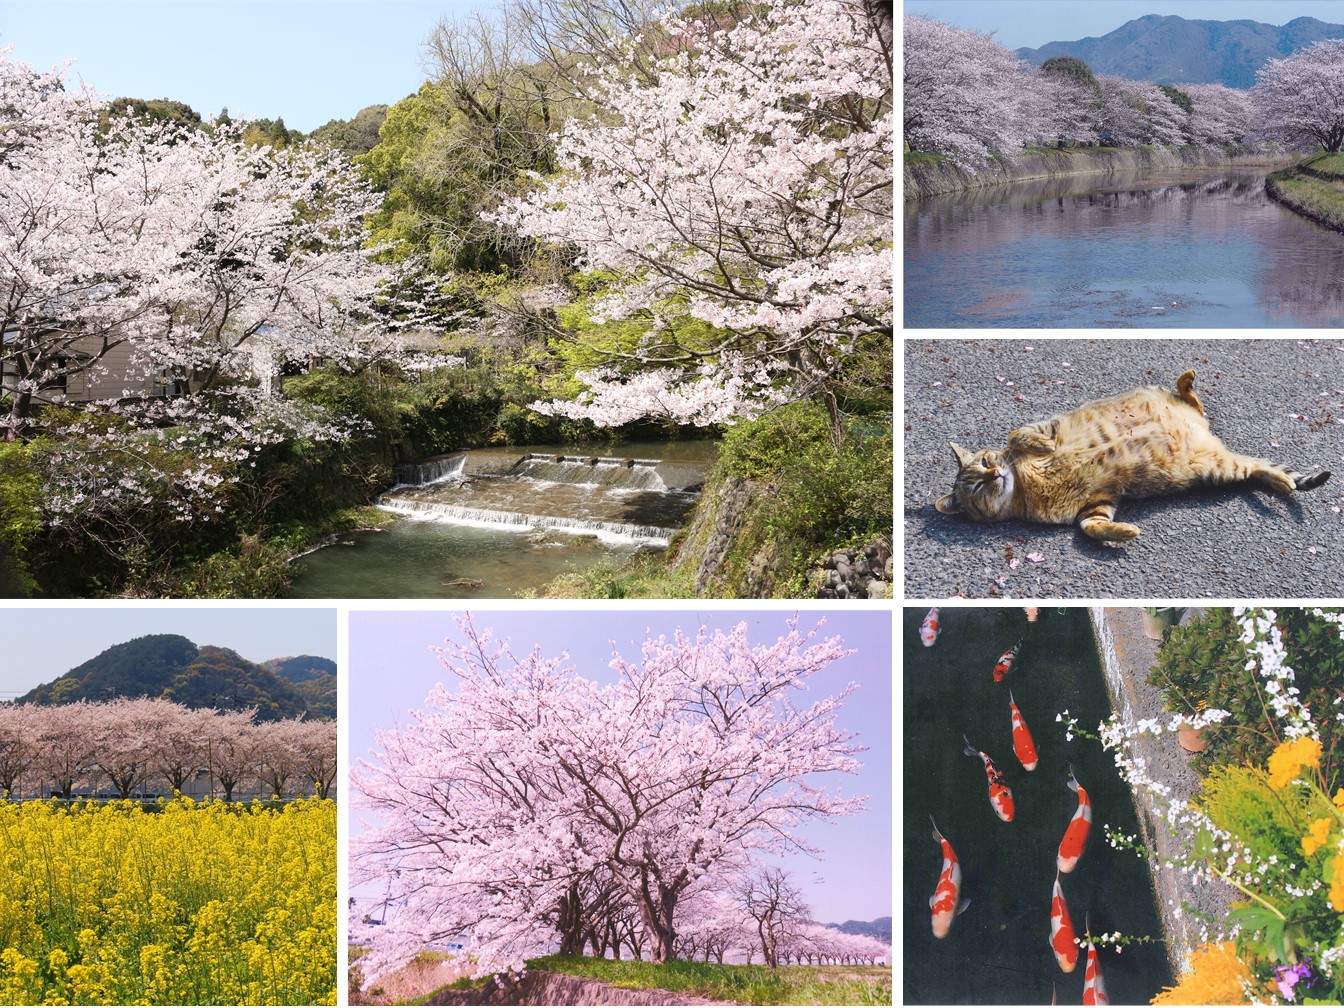 左上：川の両脇に咲く桜の写真、左の左下：手前から菜の花、桜並木、山々の風景の写真、左の右下：満開の桜の木を写した写真、右上：大きな川の両脇に桜並木が並びその様子が水面に写っている写真、右中：猫がおなかを上にしてくつろいでいる写真、右下：鯉が泳いでいる所を花の上から写した写真